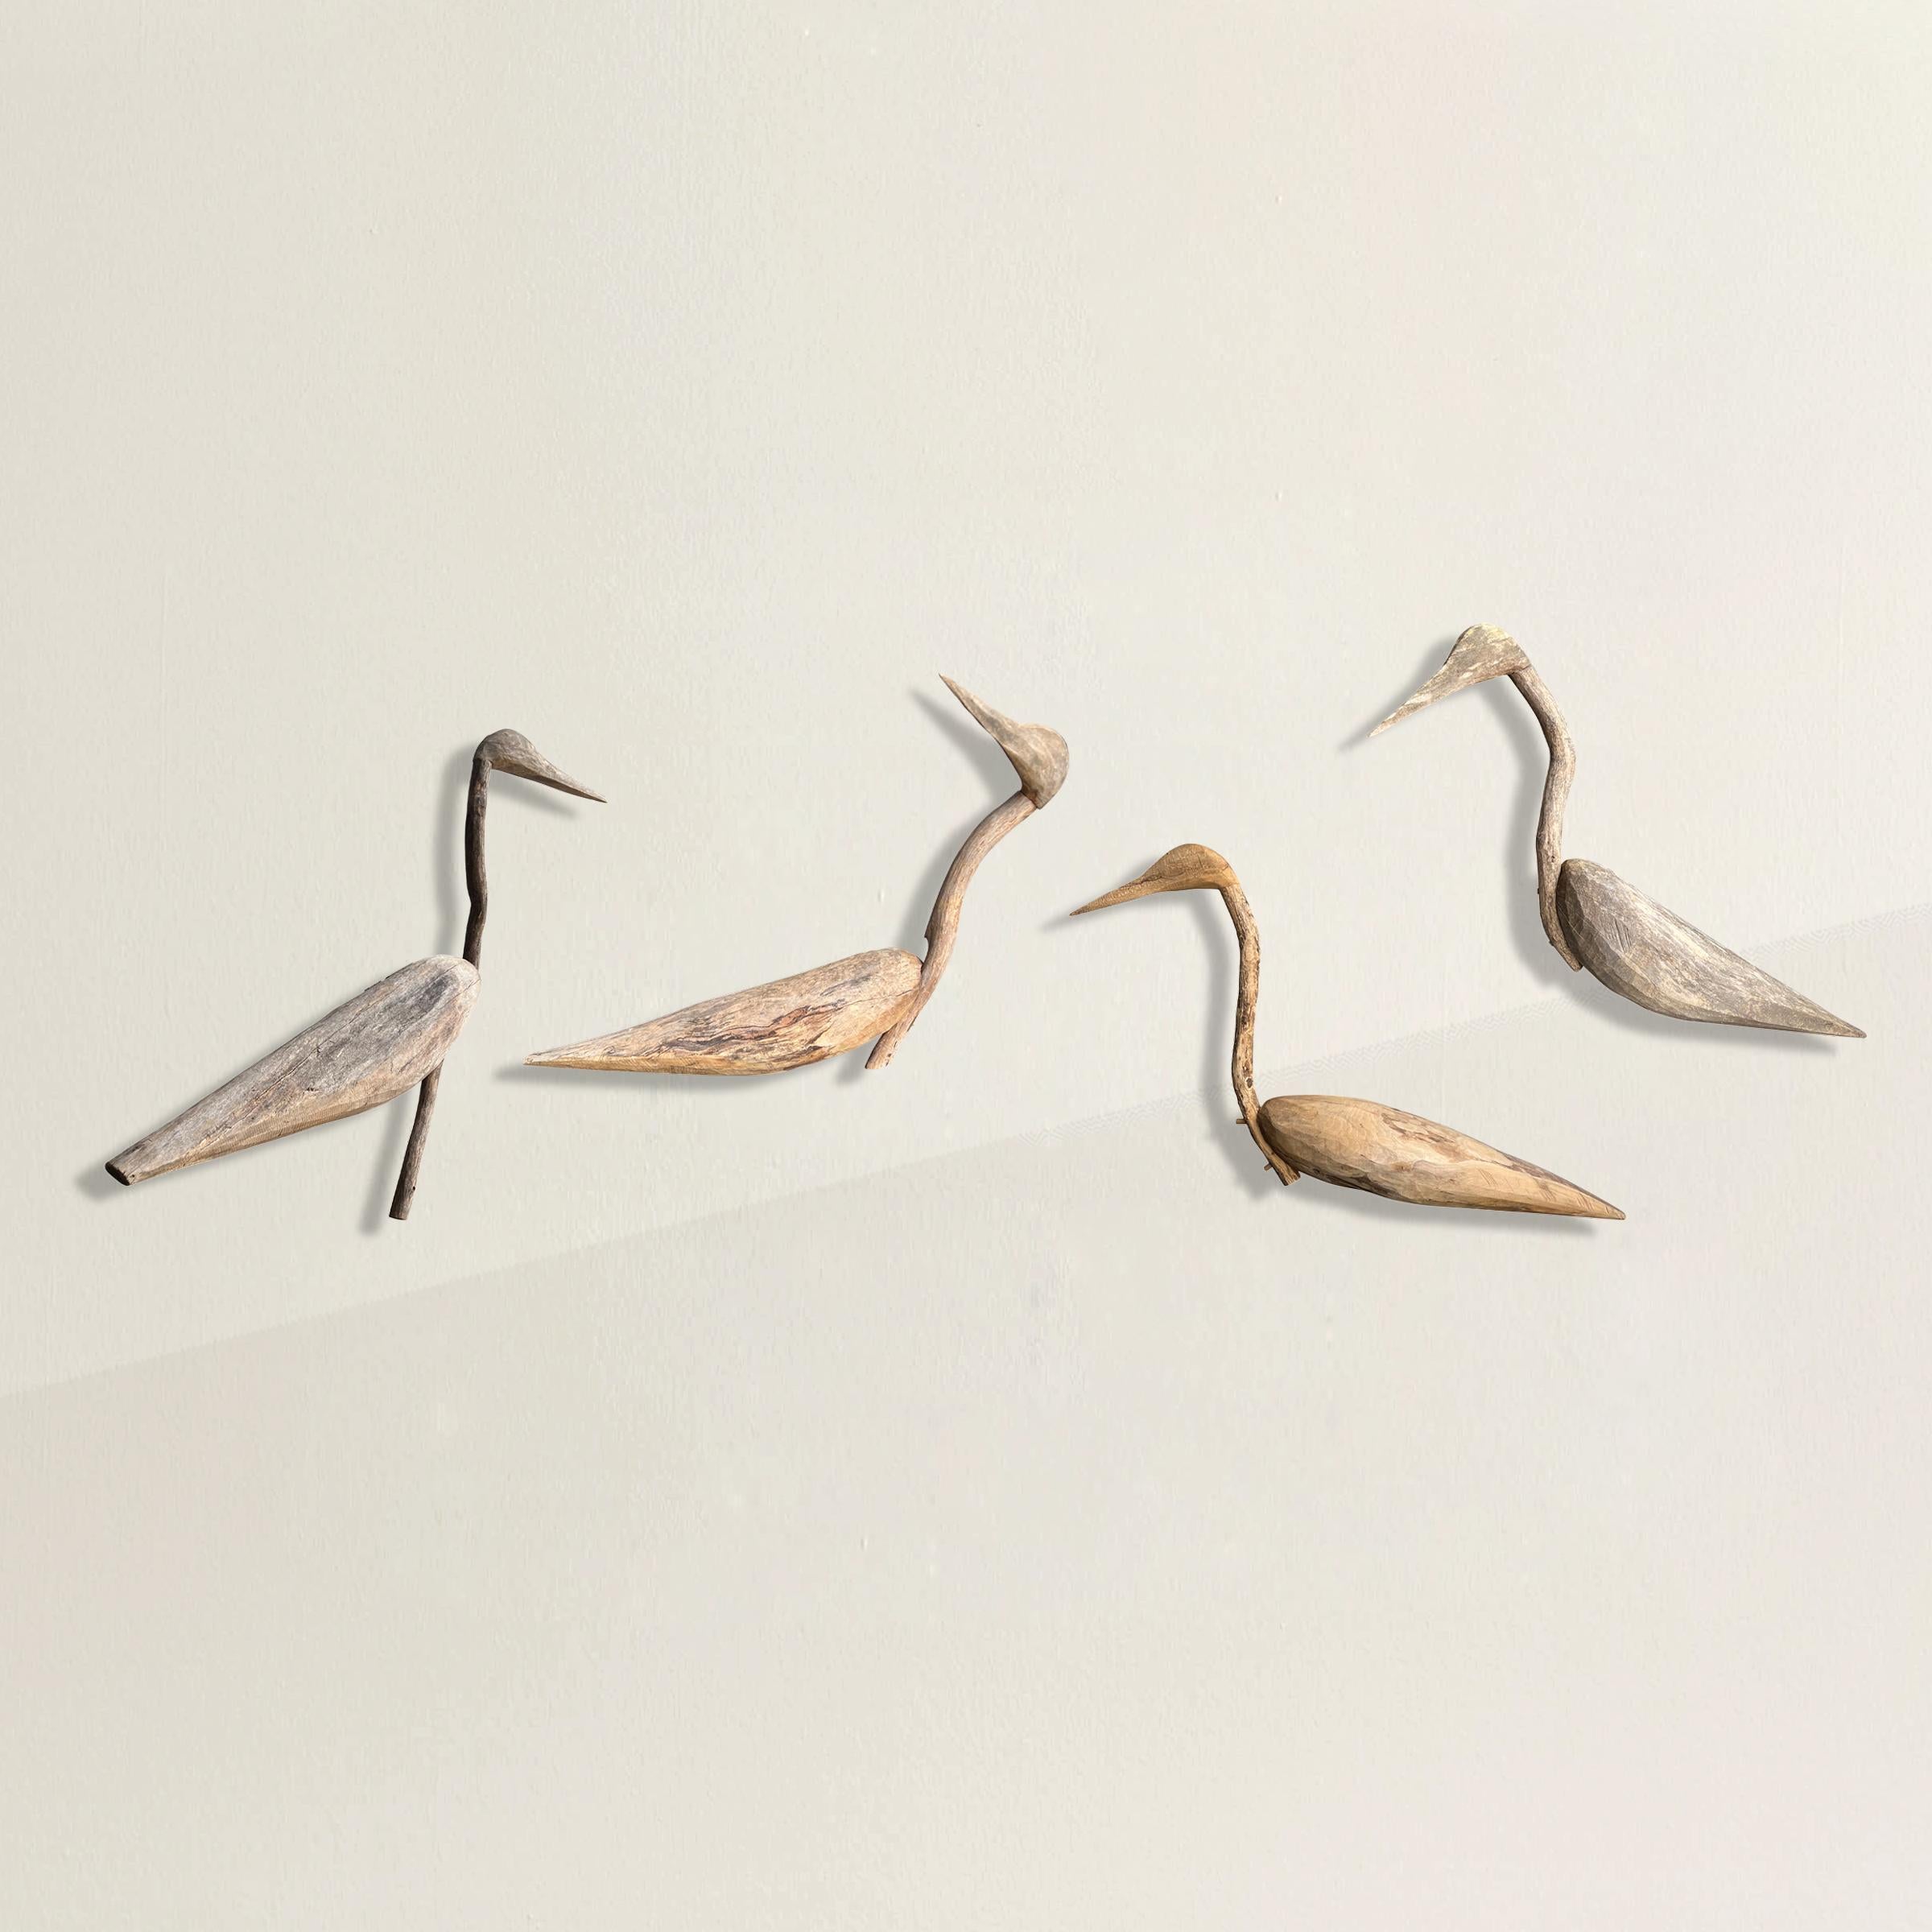 Un ensemble fougueux et ludique de quatre leurres en bois American Folk Art du 20e siècle, dont les corps et les têtes sont sculptés à la main et soutenus par des cols de branches naturels déformés qui confèrent à chaque oiseau une personnalité